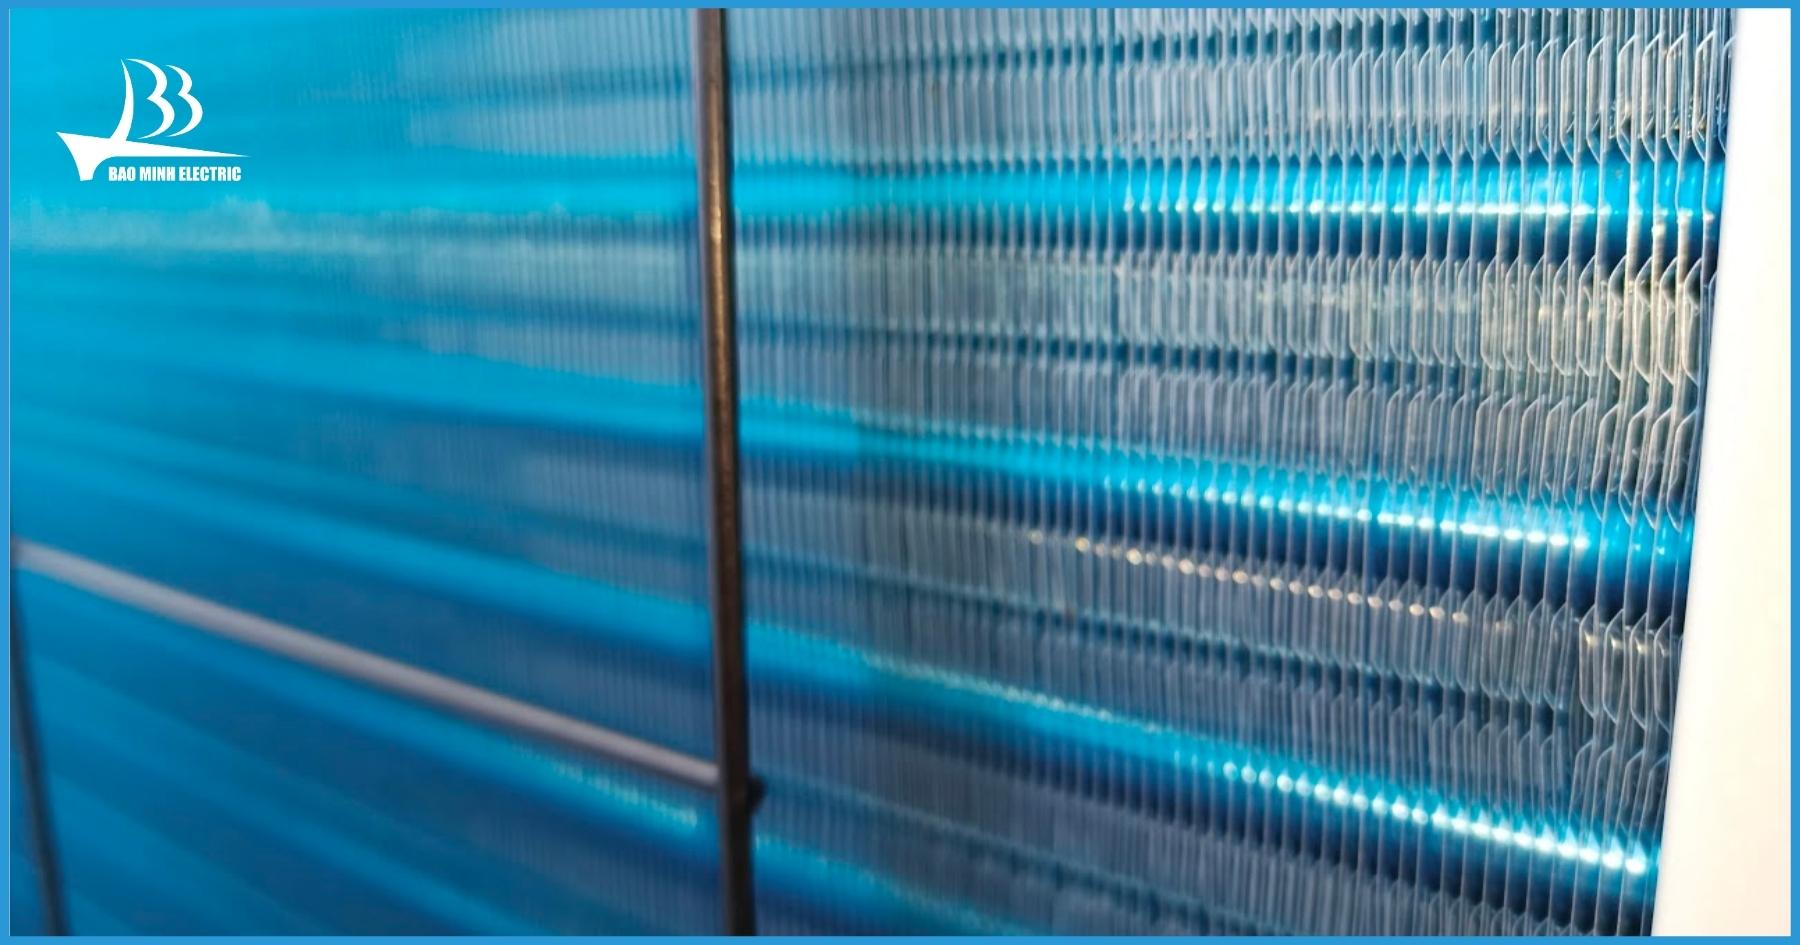 Lớp Blue-fin mạ trên dàn nóng có độ bền cao, giúp tăng tuổi thọ thiết bị